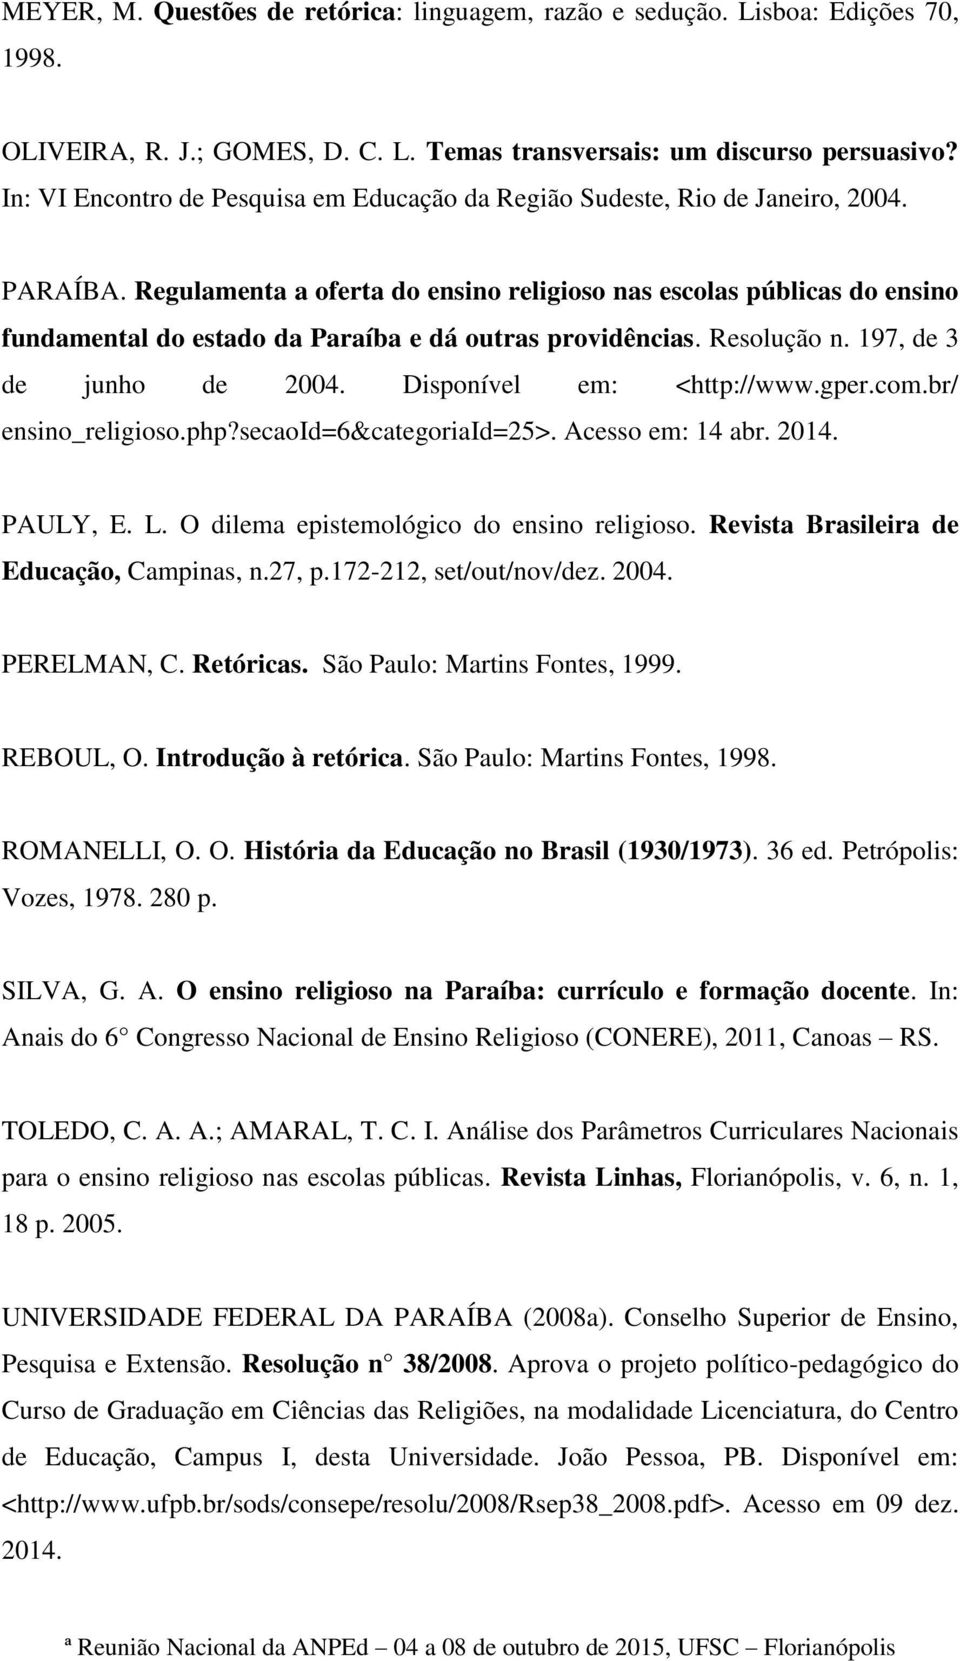 Regulamenta a oferta do ensino religioso nas escolas públicas do ensino fundamental do estado da Paraíba e dá outras providências. Resolução n. 197, de 3 de junho de 2004. Disponível em: <http://www.